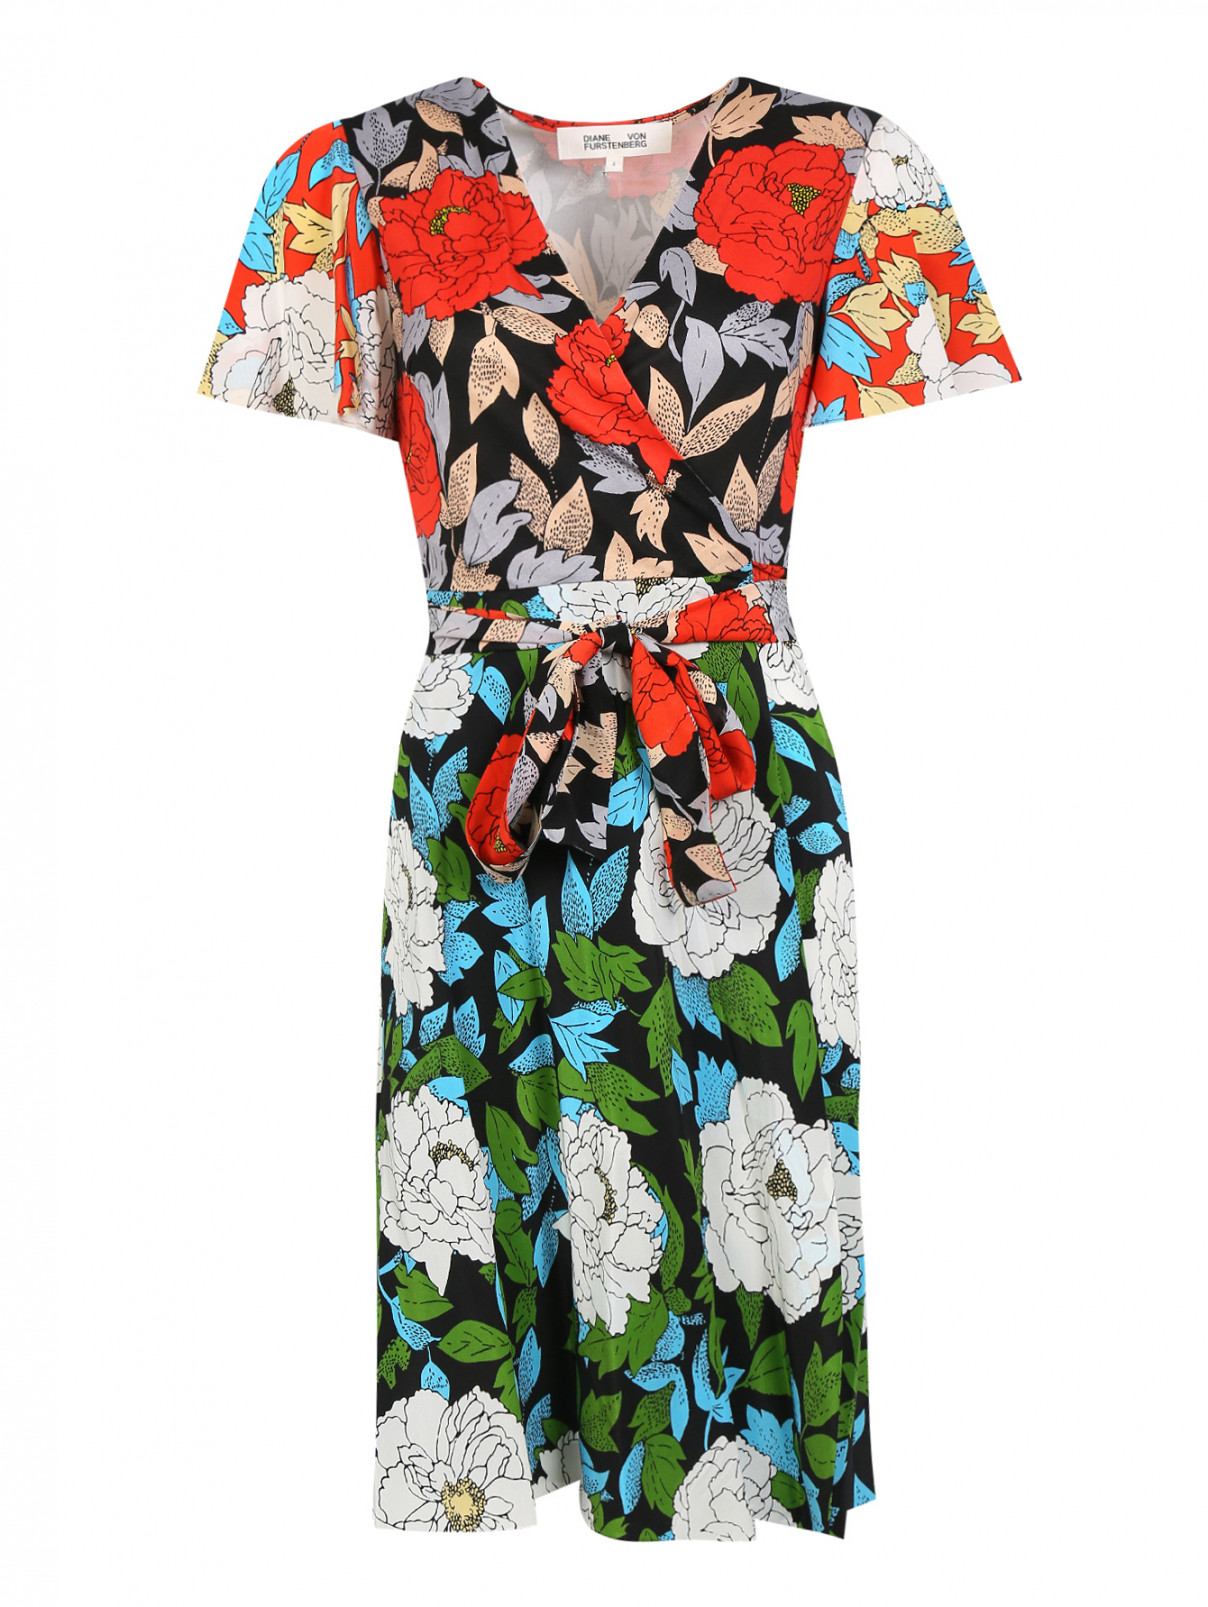 Шелковое платье с запахом и цветочным принтом Diane von Furstenberg  –  Общий вид  – Цвет:  Узор